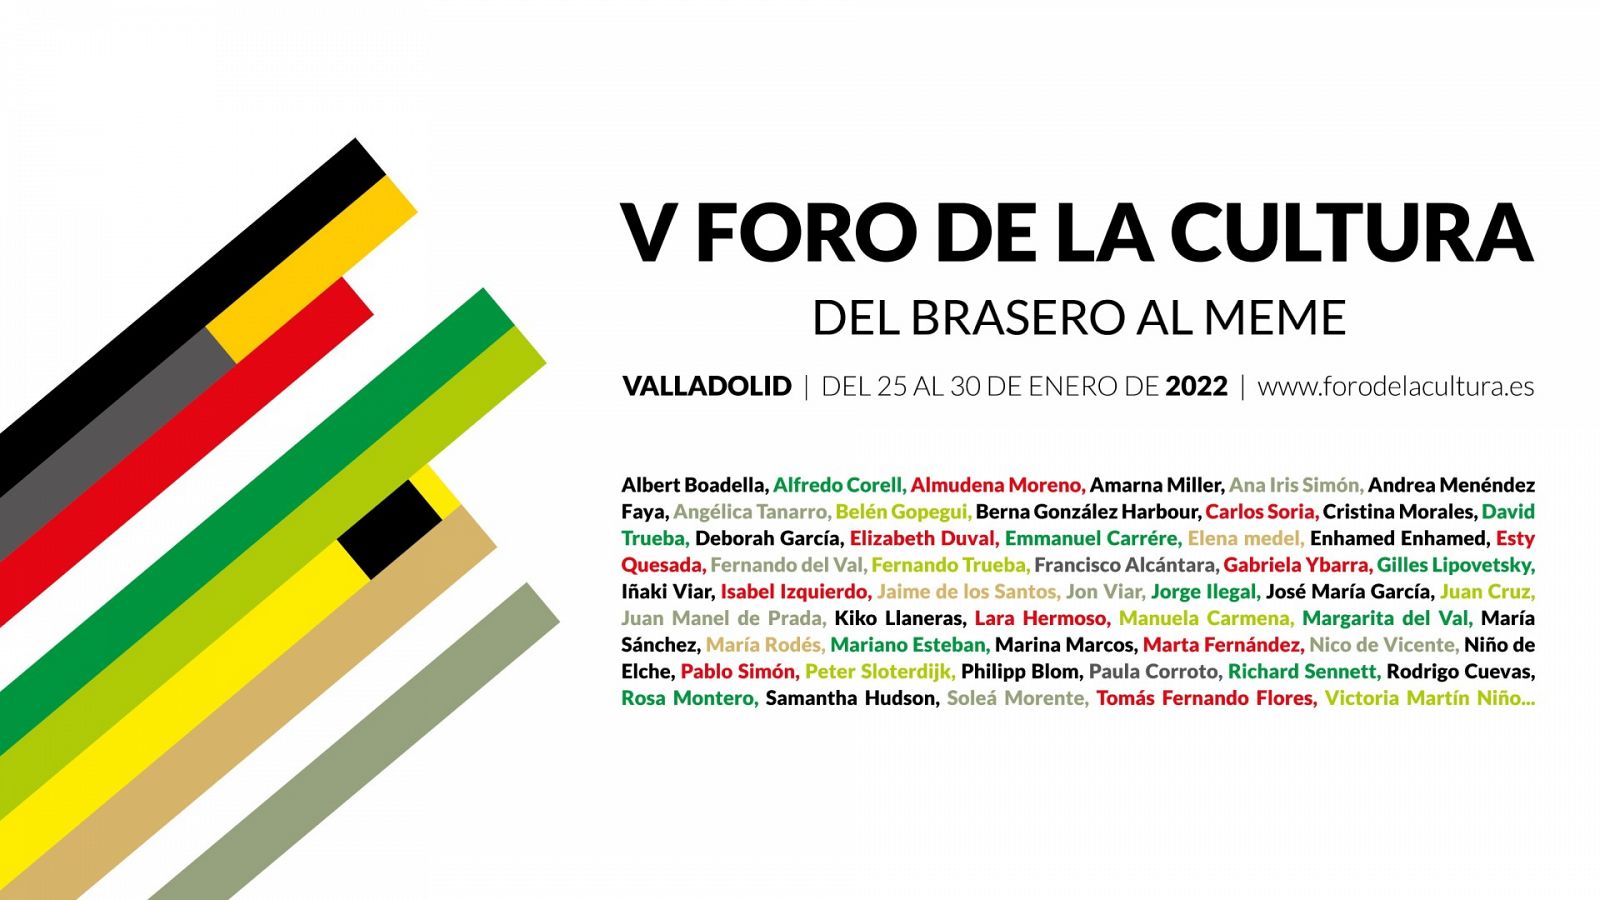 El V Foro de la Cultura se celebra en Valladolid entre los días 25 y 30 de enero